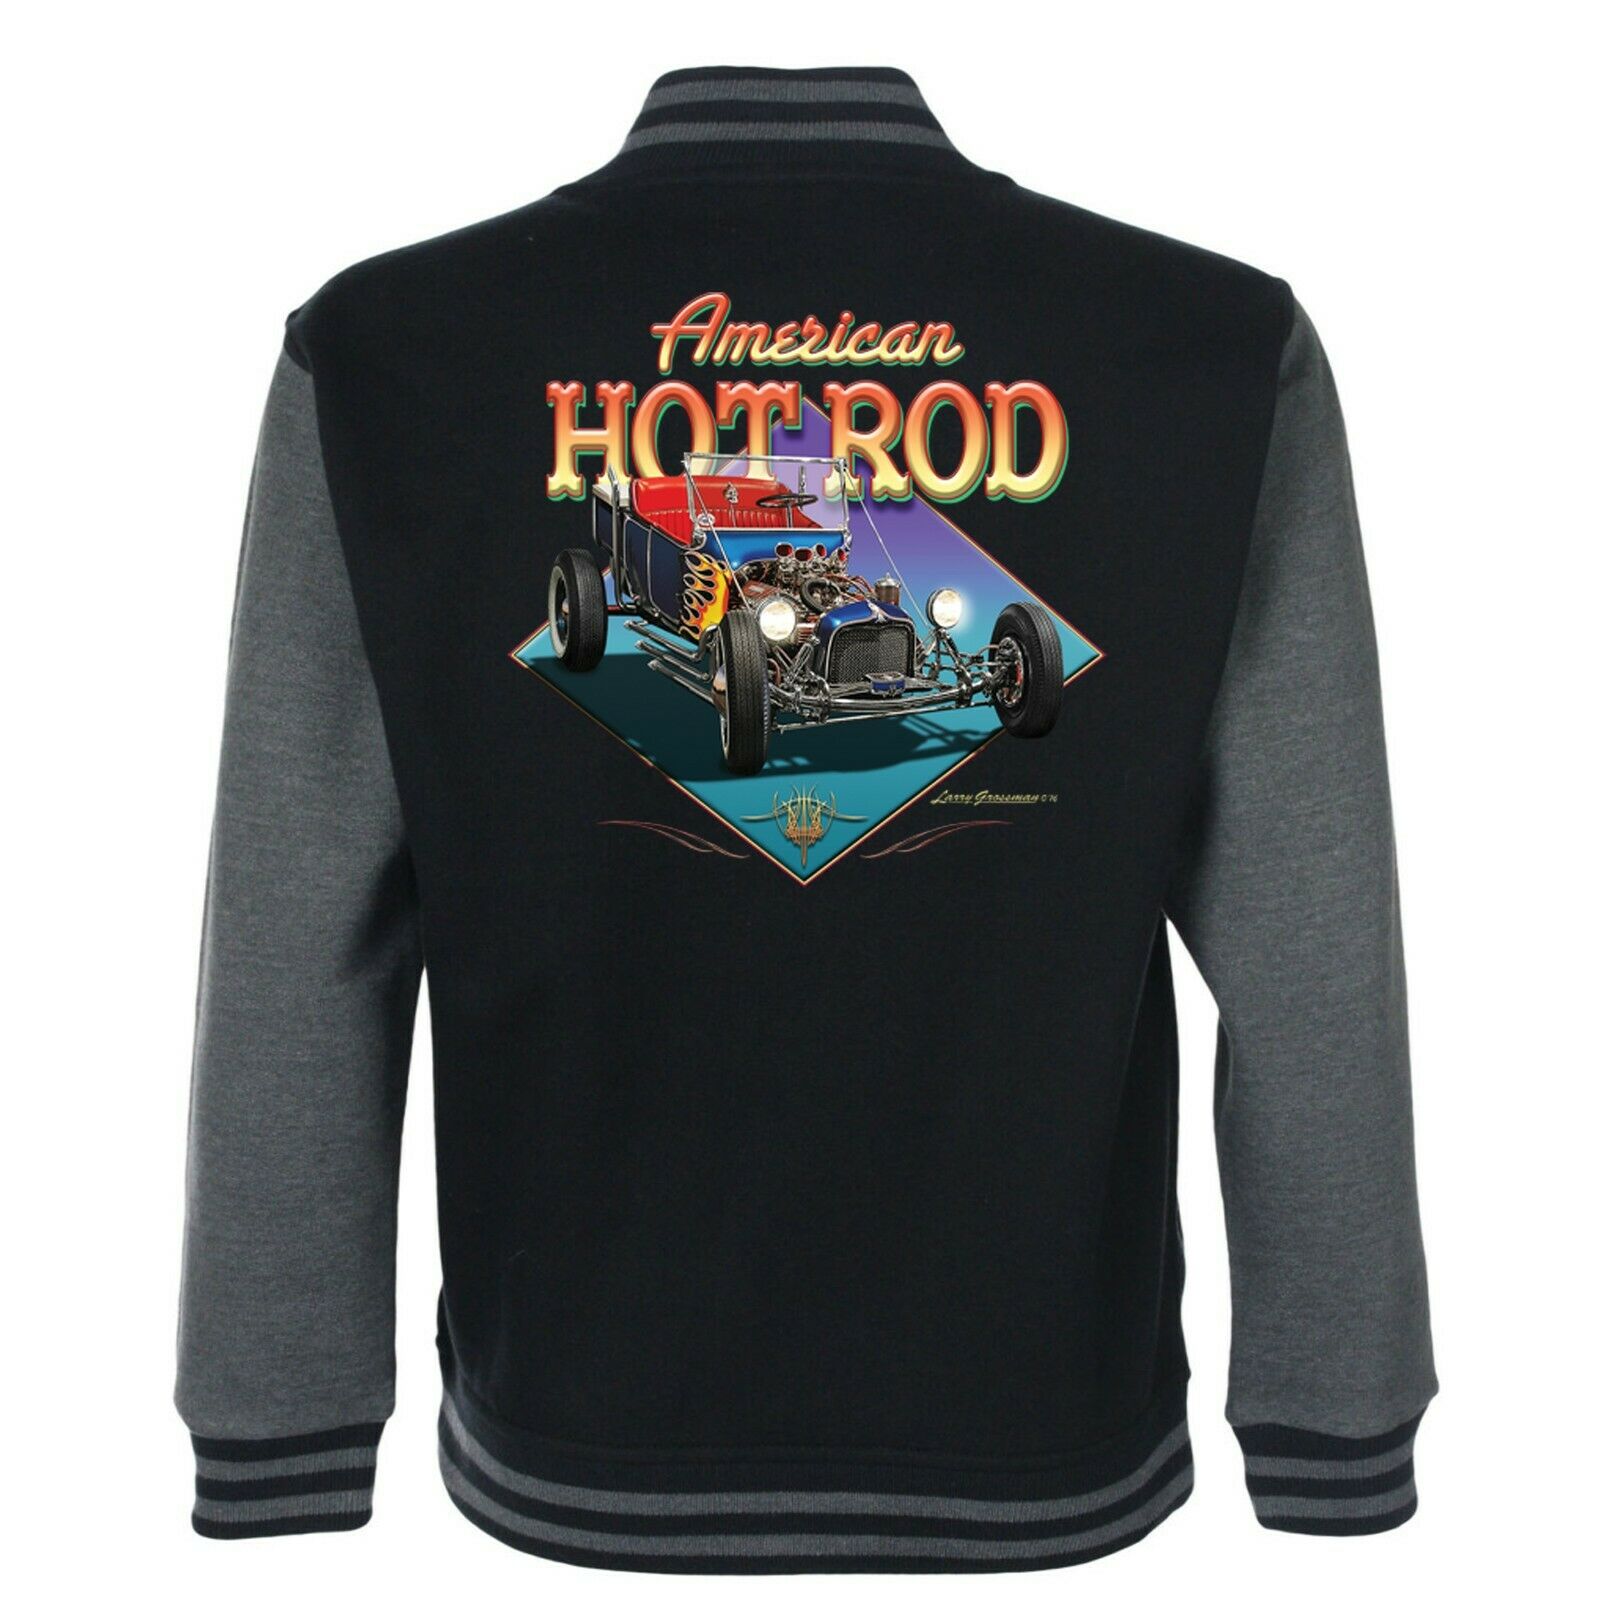 Hotrod 58 Hot Rat Rod American Varsity Garage Jacket Retro 50's Rockabilly 66 